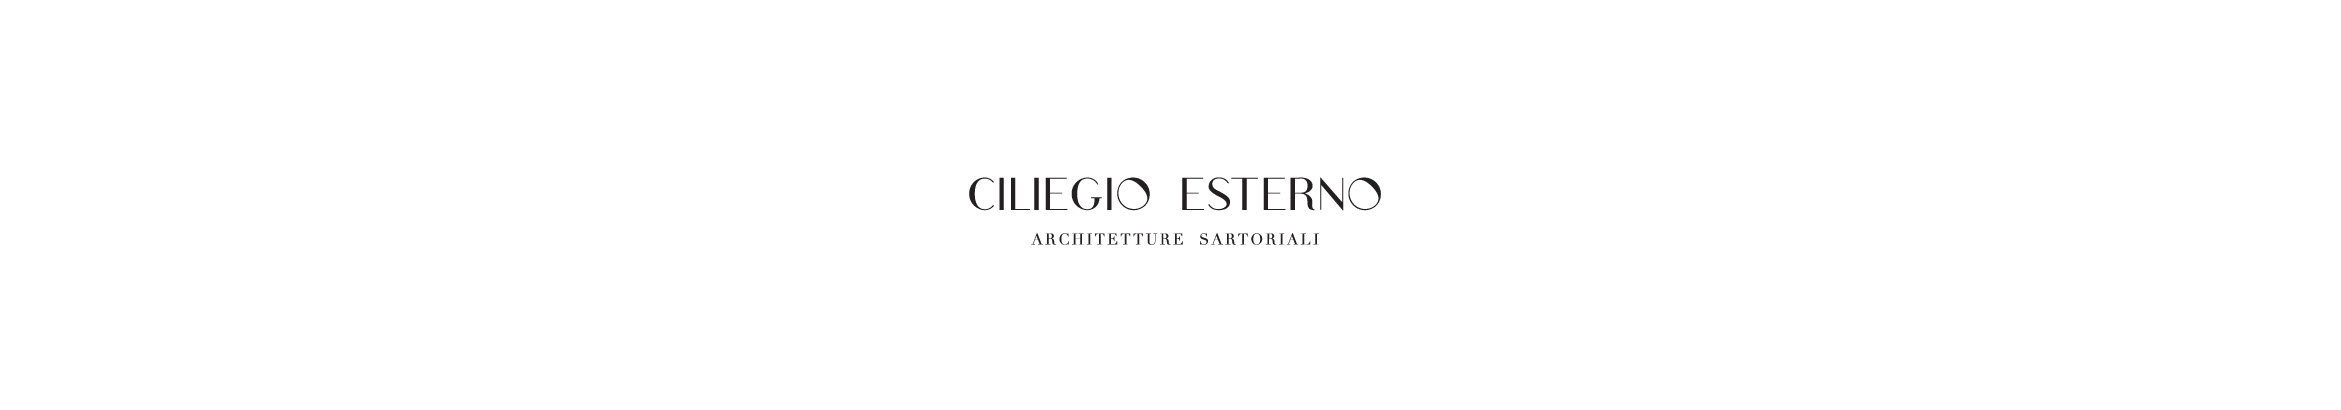 Баннер профиля CiliegioEsterno Studio